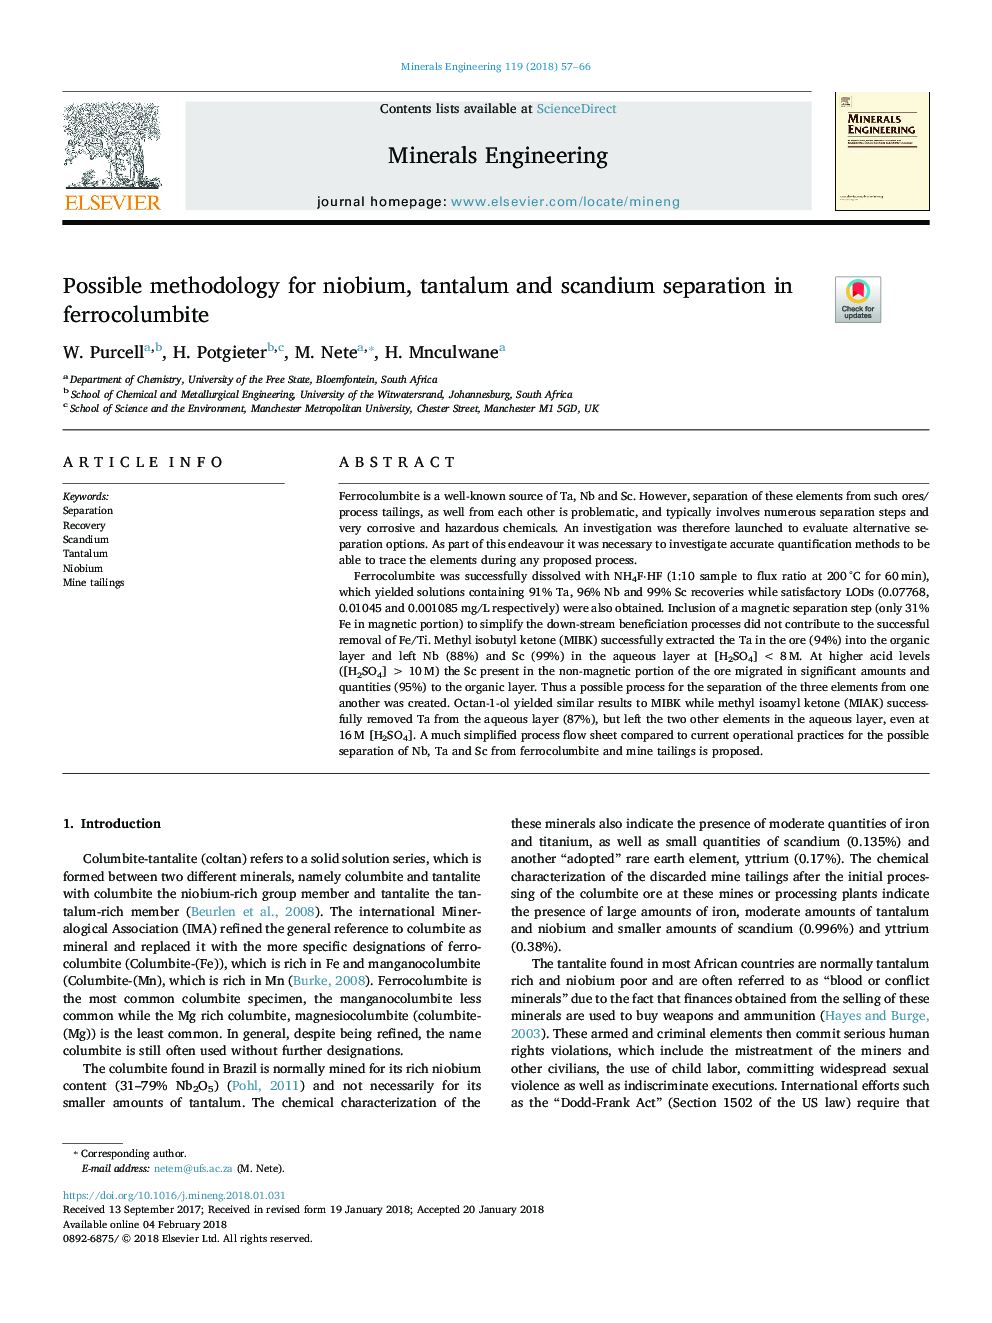 Possible methodology for niobium, tantalum and scandium separation in ferrocolumbite